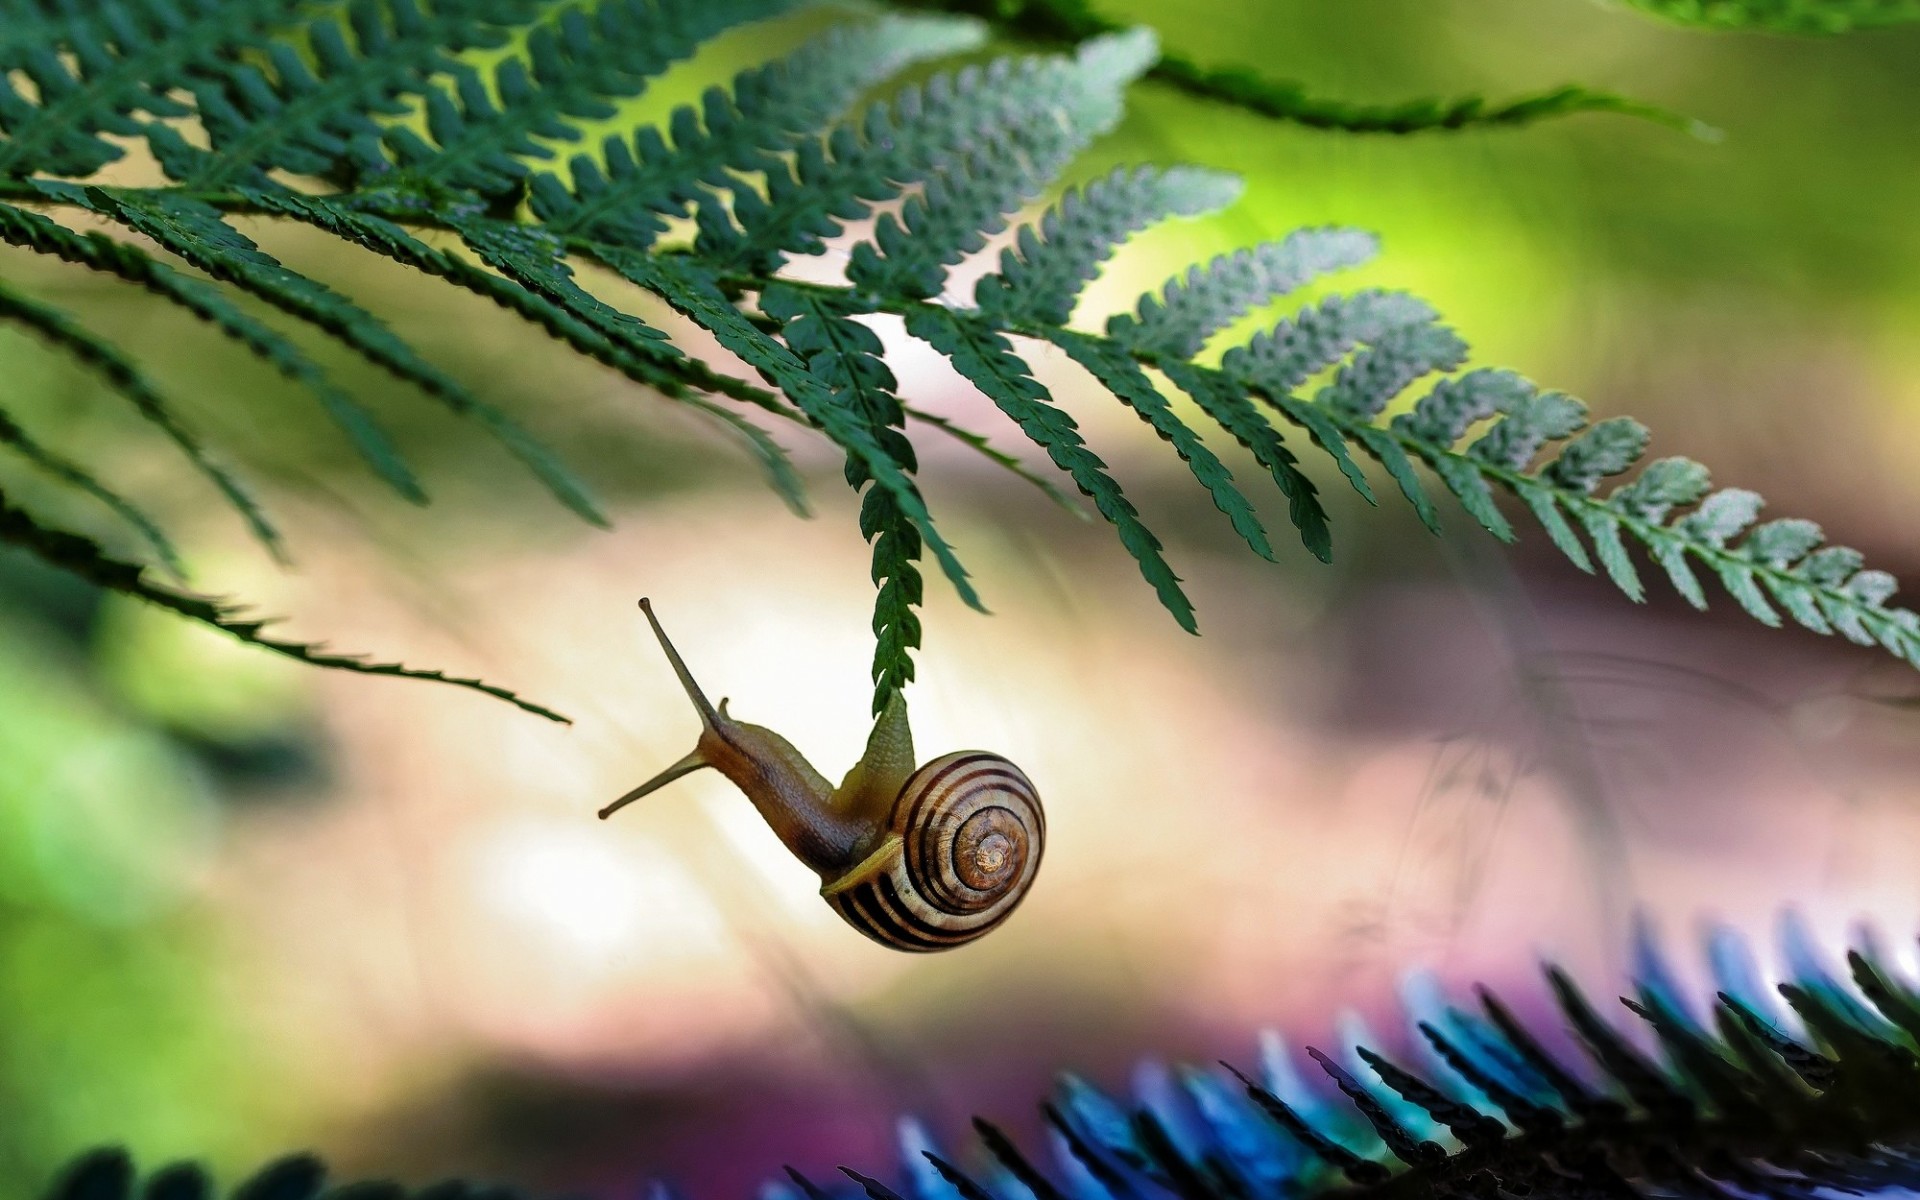 Snail On Fern , HD Wallpaper & Backgrounds